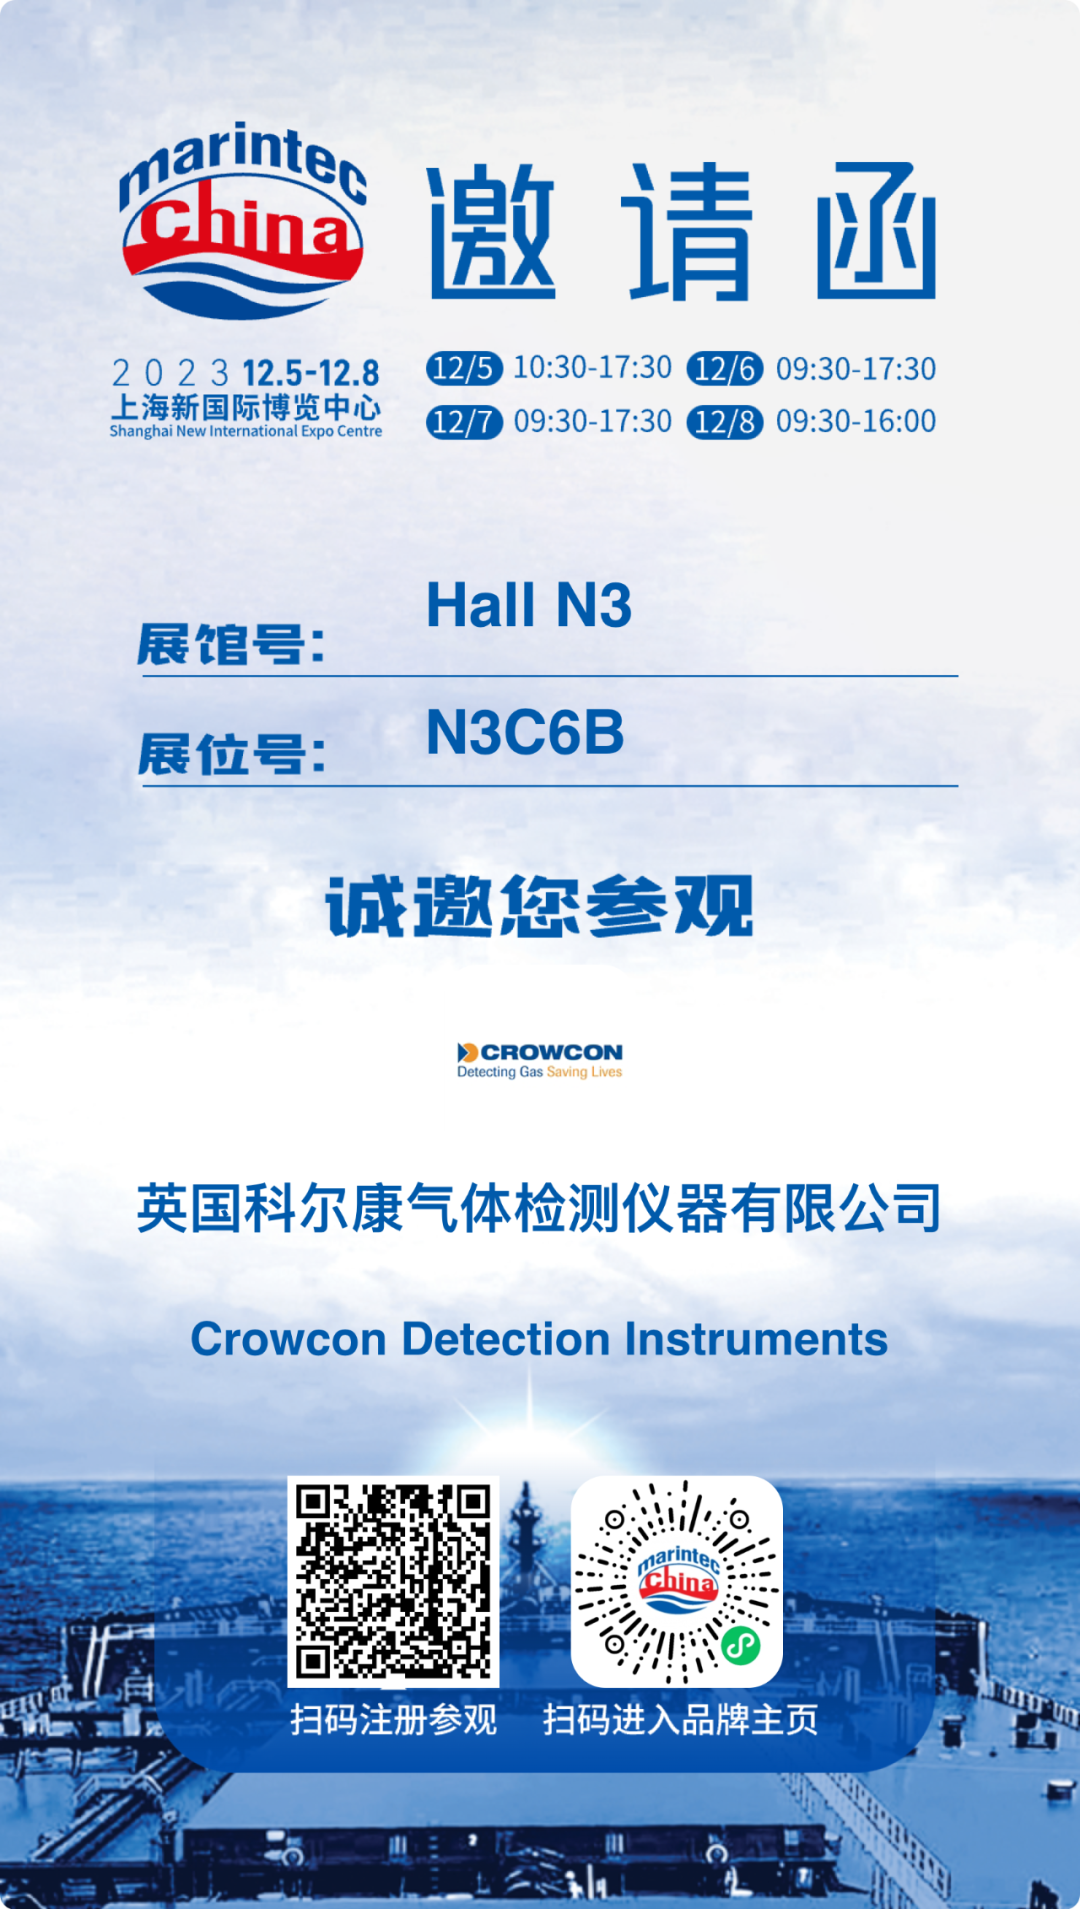 展会邀请 | 科尔康邀您共聚2023年中国国际海事展